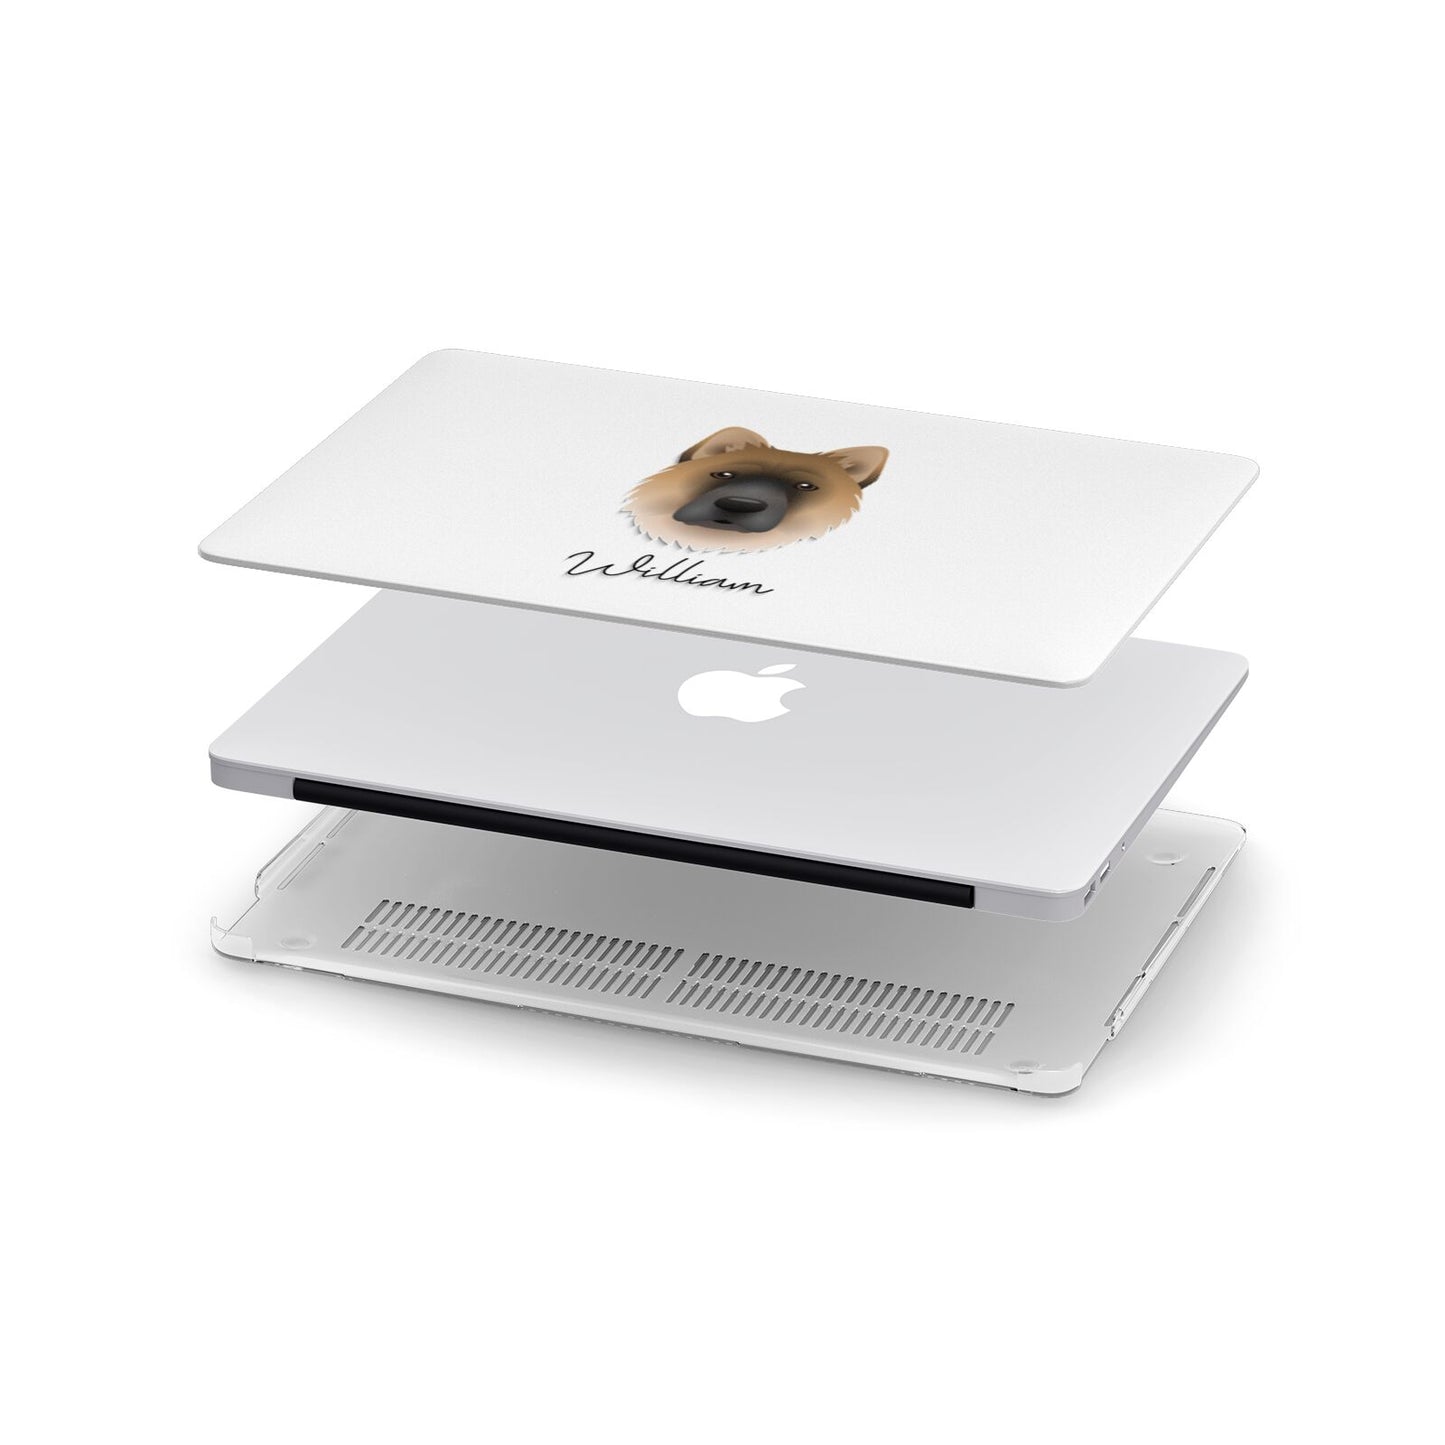 Chow Shepherd Personalised Apple MacBook Case in Detail